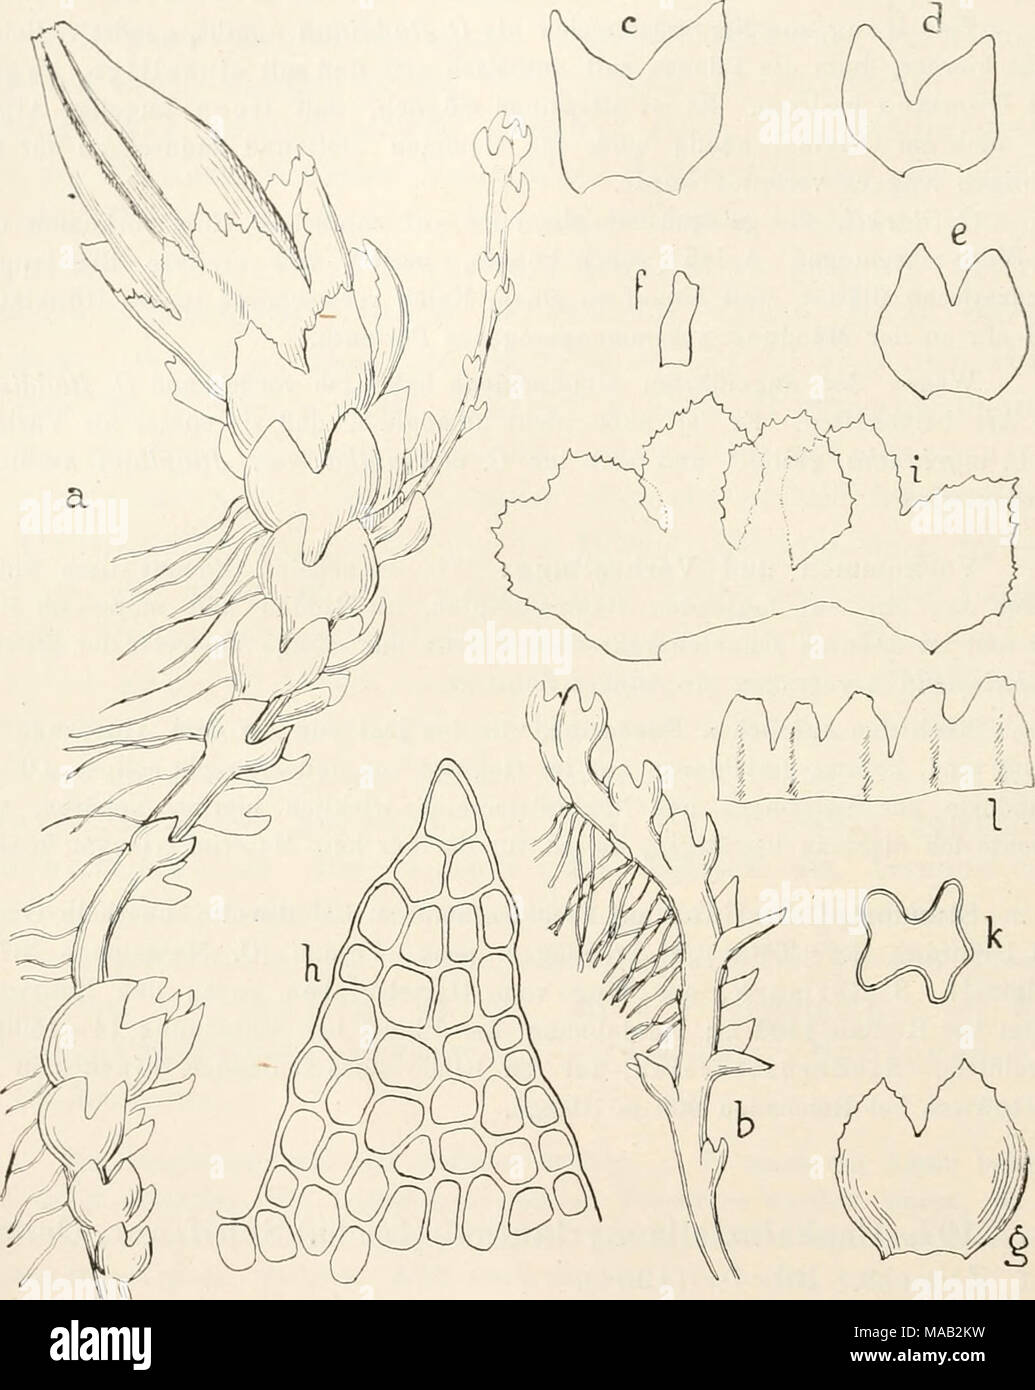 . Dr. L. Rabenhorst's Kryptogamen-Flora von Deutschland, Oesterreich und der Schweiz . Fig. 37. Cephaloziella myriantha. a Perianth tragende Pflanze, Yerg. '-Â»oj^; h Steriles Stengelende, Verg. &quot;'O/,; câe einzelne BlÃ¤tter ausgebreitet, Verg. &quot;'0/^; f Unterblatt, Yerg. ^o/j; g (f HÃ¼llblatt unterhalb des Perianths. Yerg. 50/^; h Blattzipfel mit Zellnetz, Yerg. ^oo/^; i HÃ¼ll- blattkranz ausgebreitet, Yerg. â '0/^; k Querschnitt durch das Perianth im oberen Drittel, Yerg. â '^l^â , 1 PerianthmÃ¼ndung ausgebreitet, Yerg. Â»o/j. Stock Photo